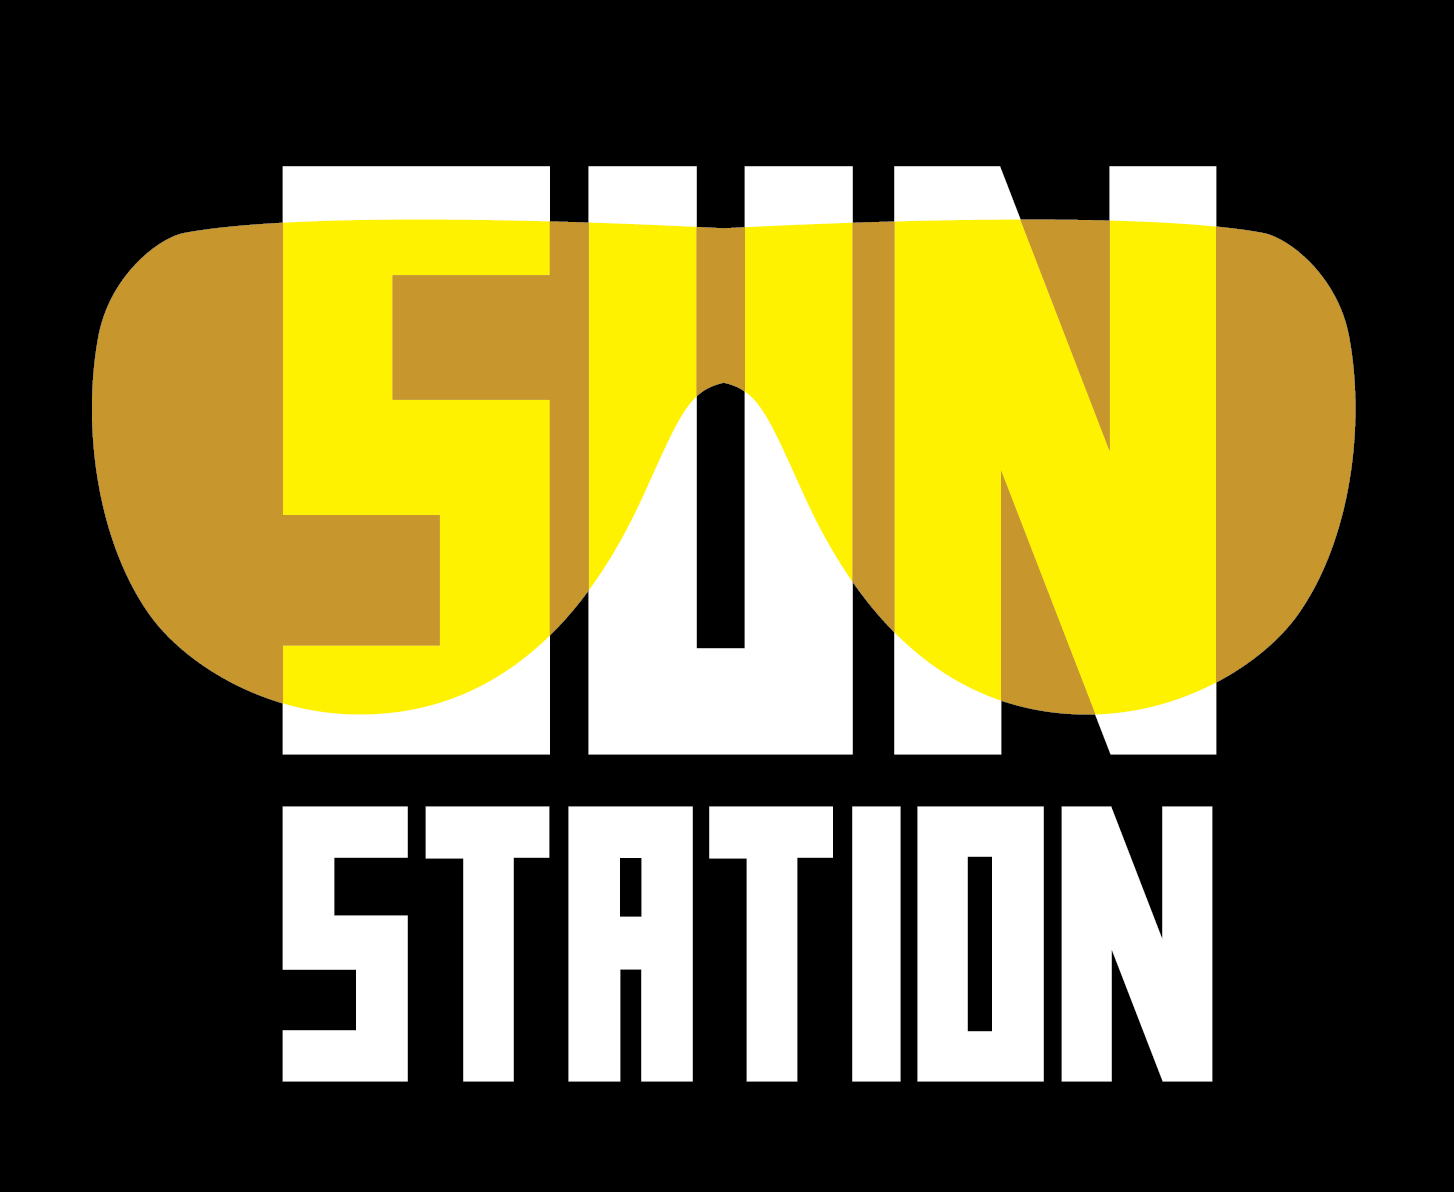 SunStation - утвержденный вариант лого